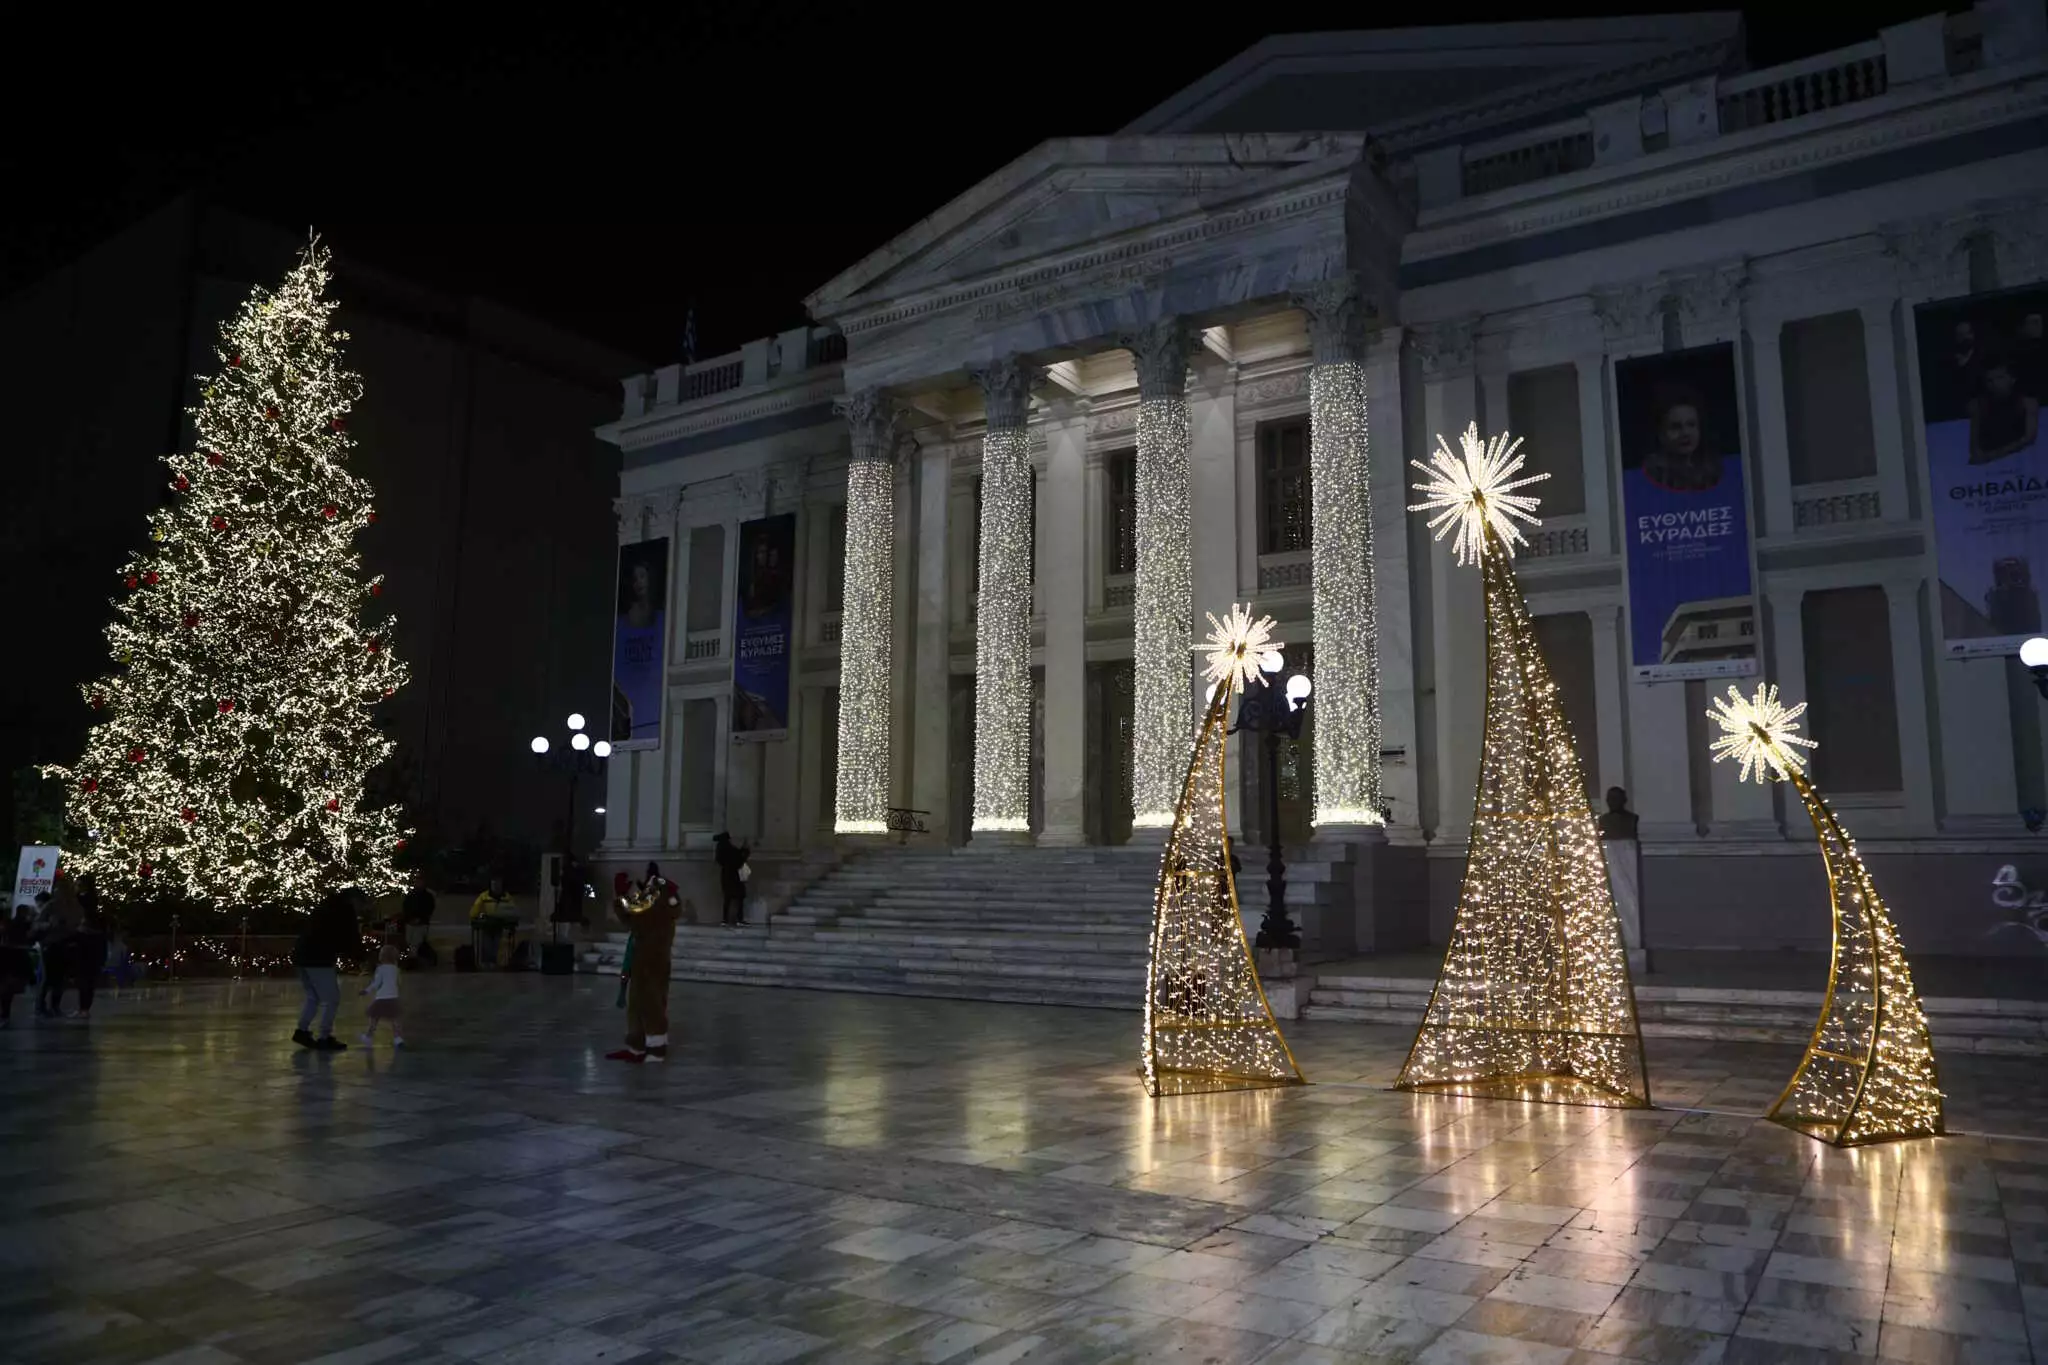 Χριστούγεννα στον Πειραιά: Φωταγώγηση του δέντρου με Πάνο Κιάμο και Ρούλα Κορομηλά